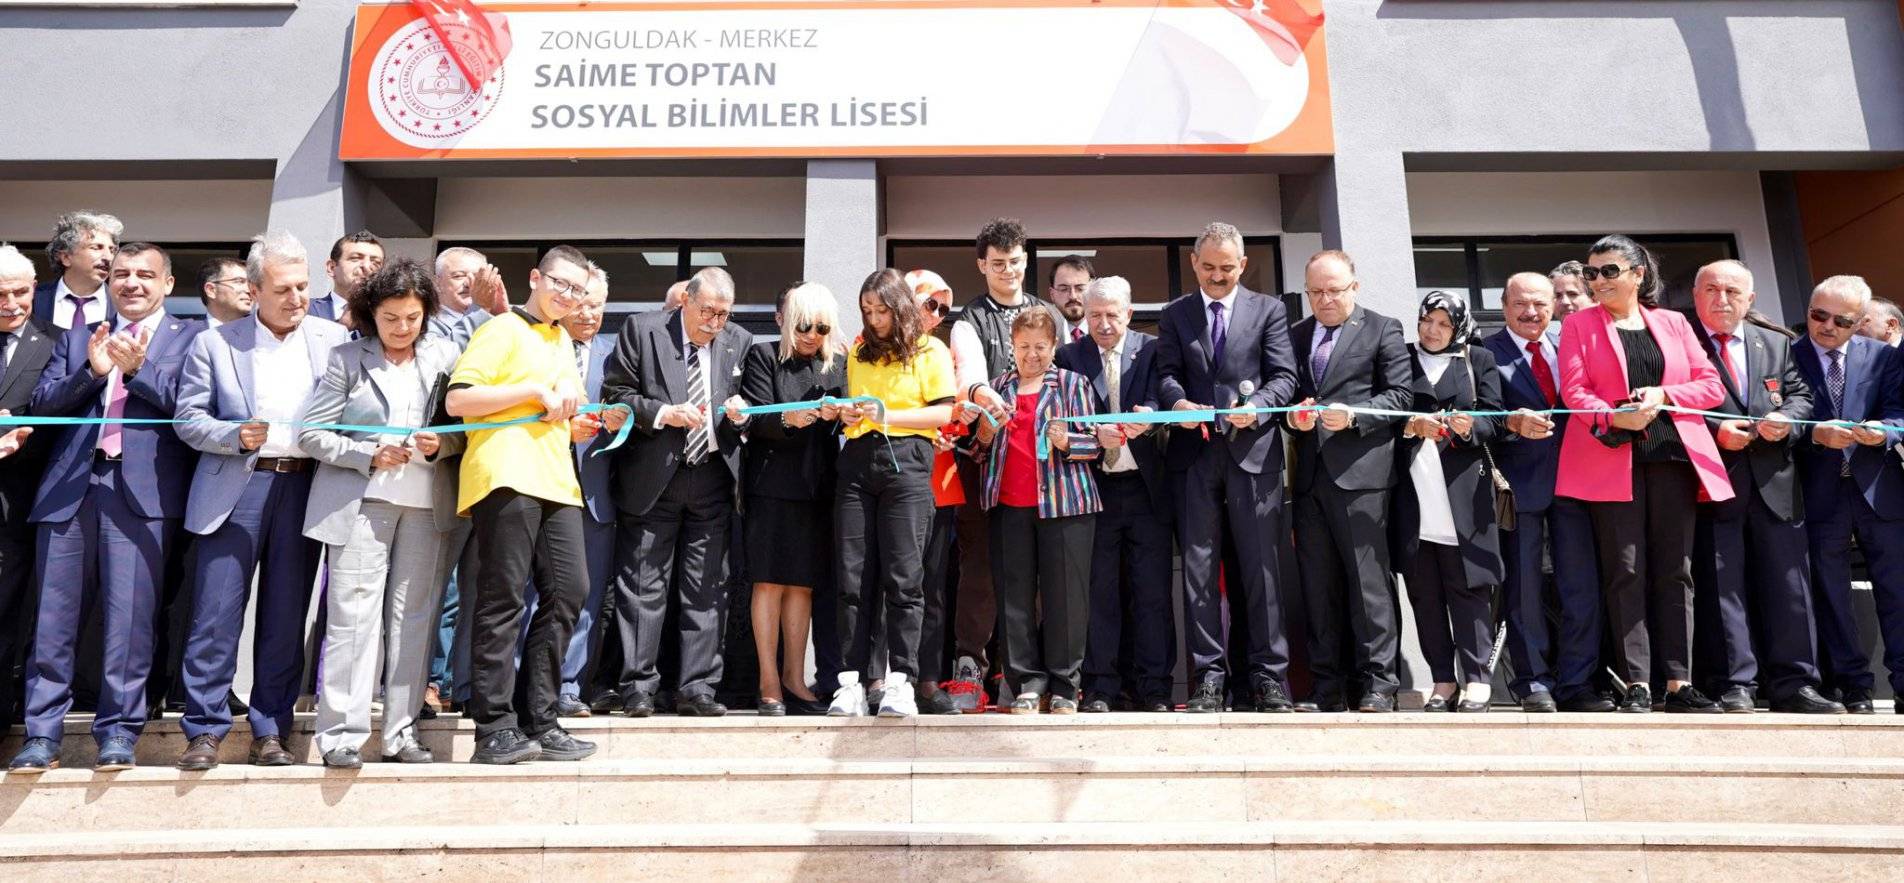 Zonguldak Sosyal Bilimler Lisesi Açıldı